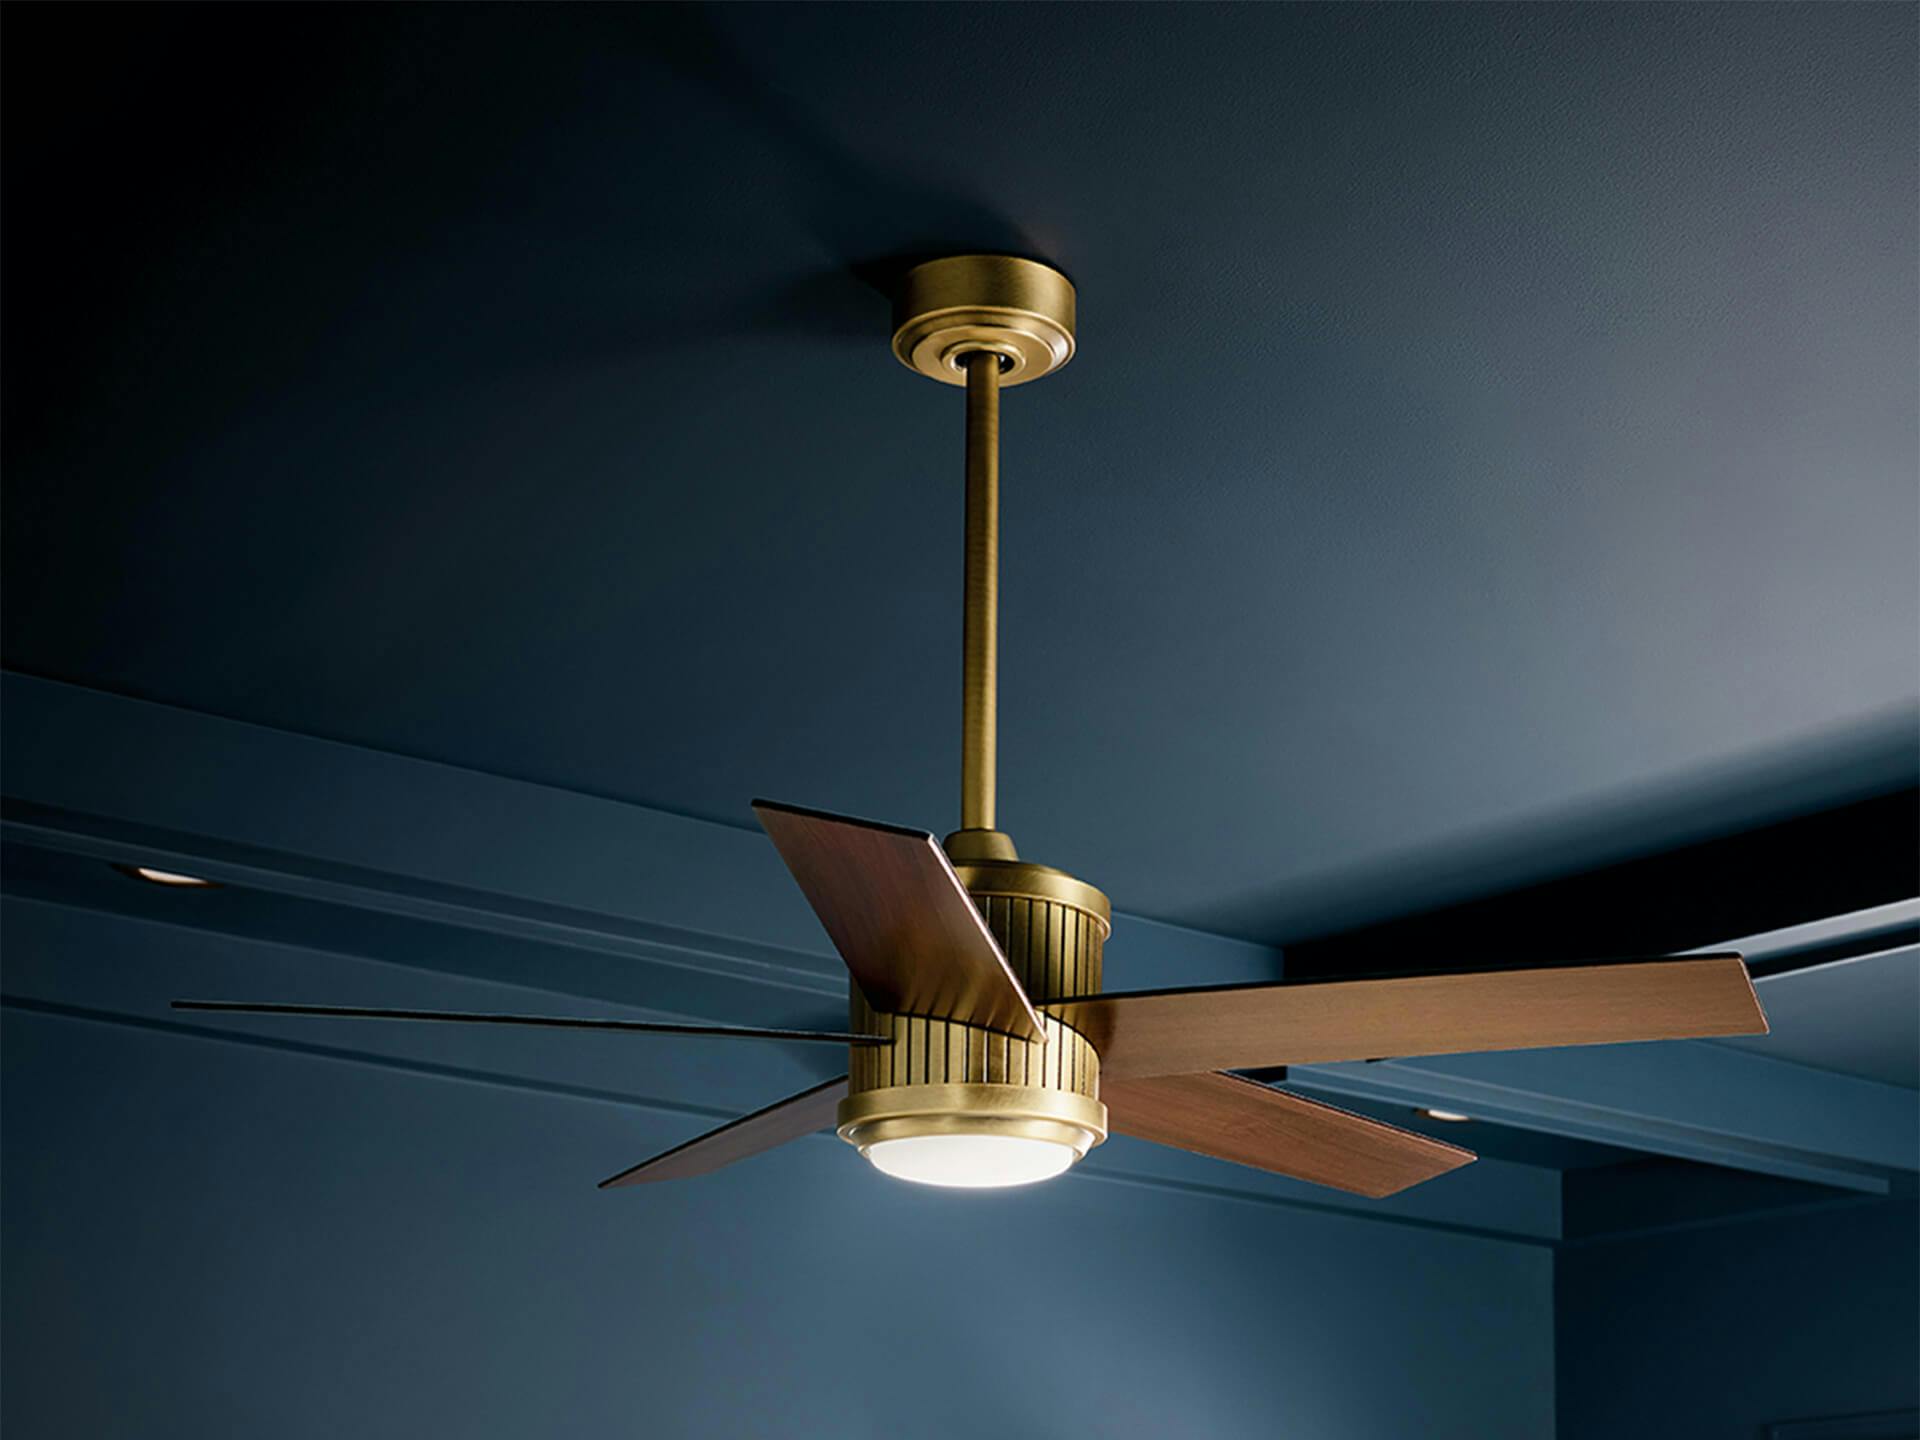 Brahm ceiling fan in natural brass.